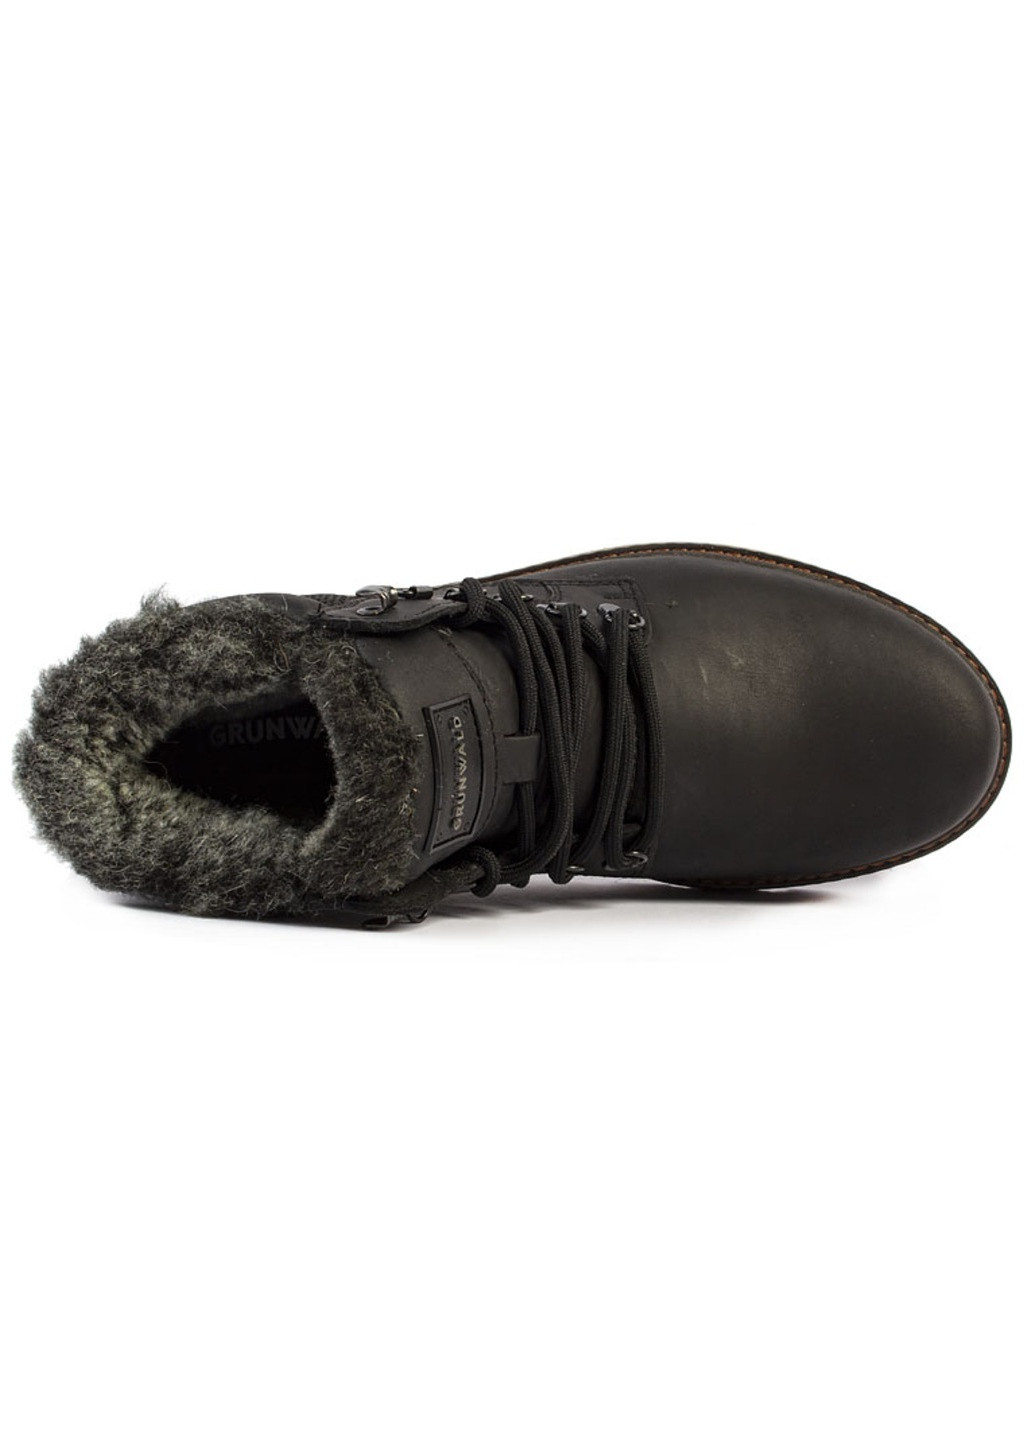 Черные зимние ботинки мужские бренда 9500836_(1) Grunwald